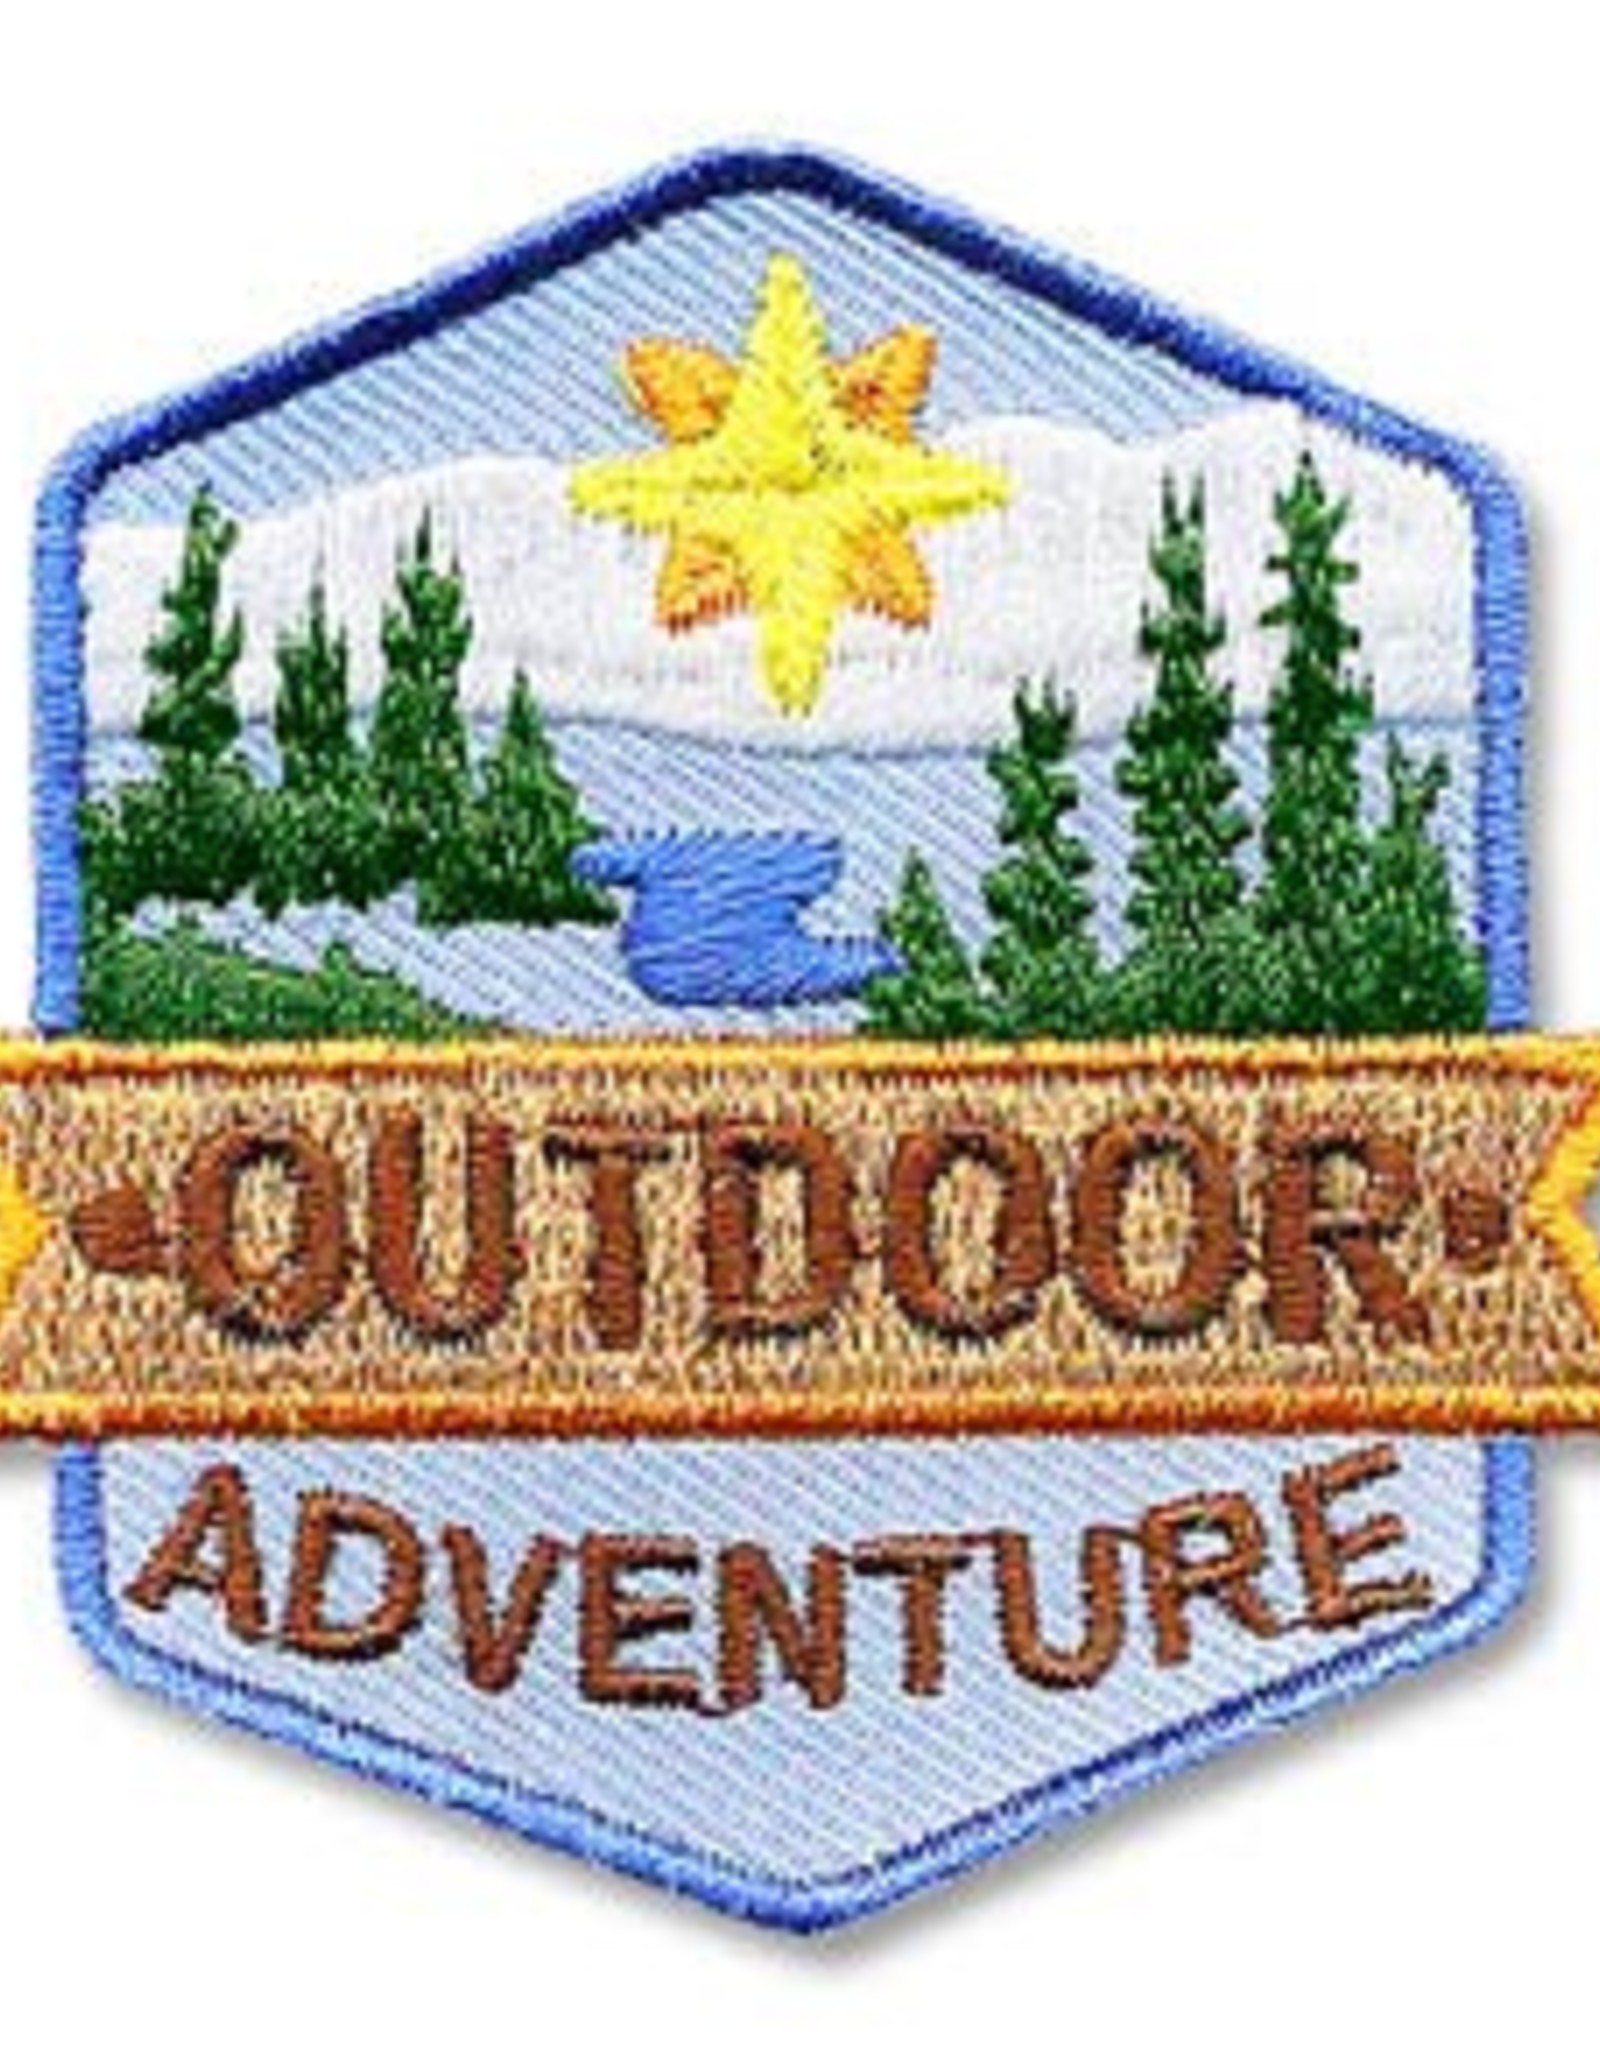 snappylogos Outdoor Adventure Fun Patch (5038)